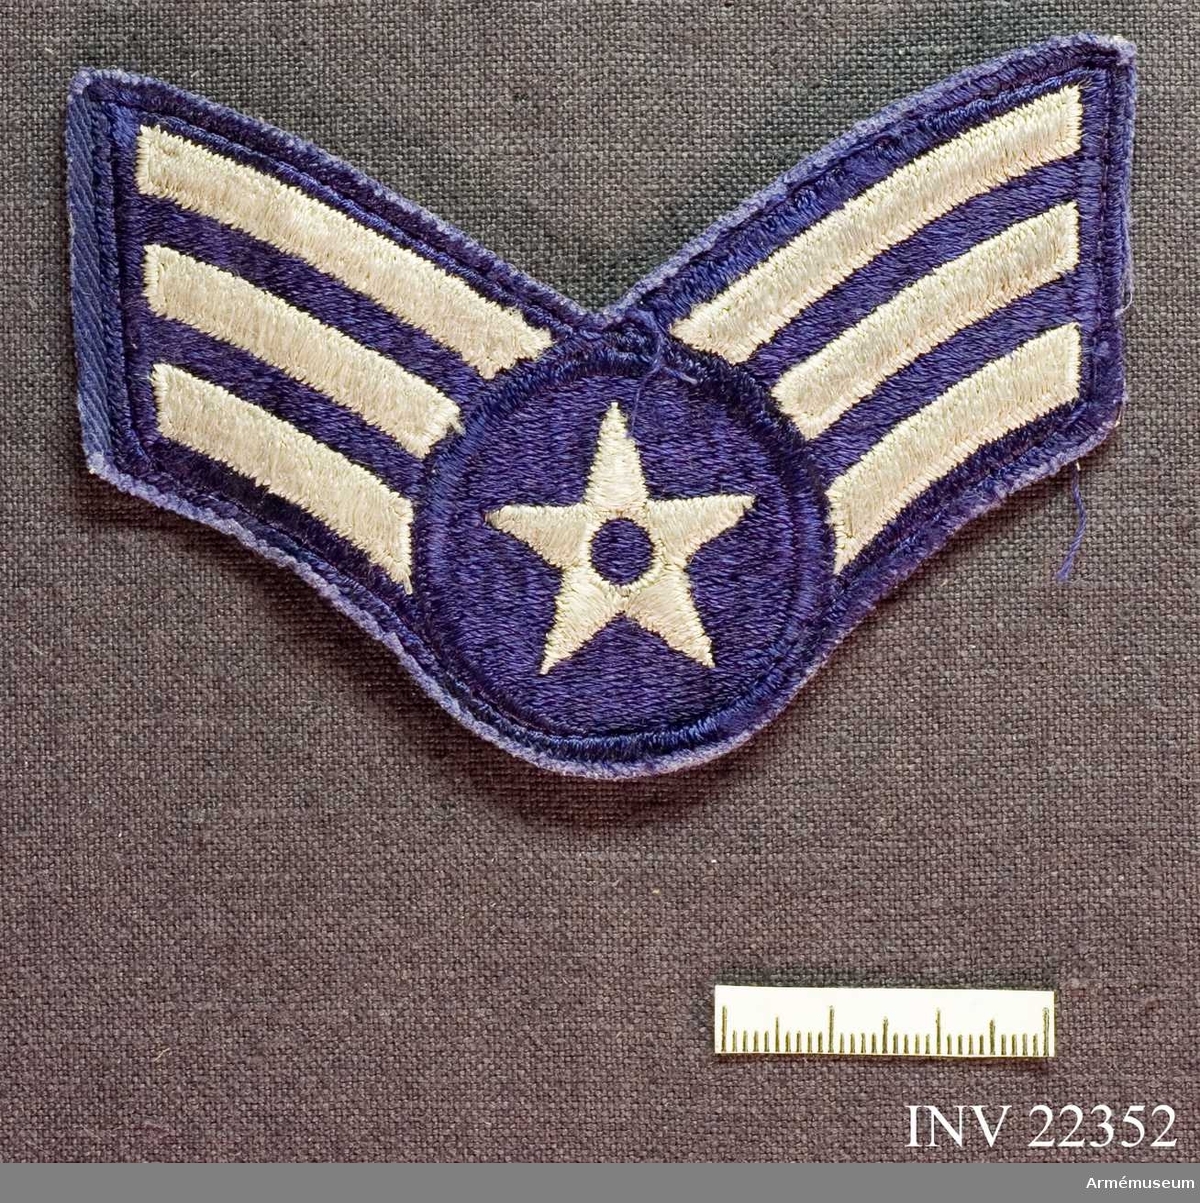 Grupp C I.
För amerikansk trupp som deltog i striderna i Korea 1950-53. United States Air Force - USAF: from 1948 Sergant.